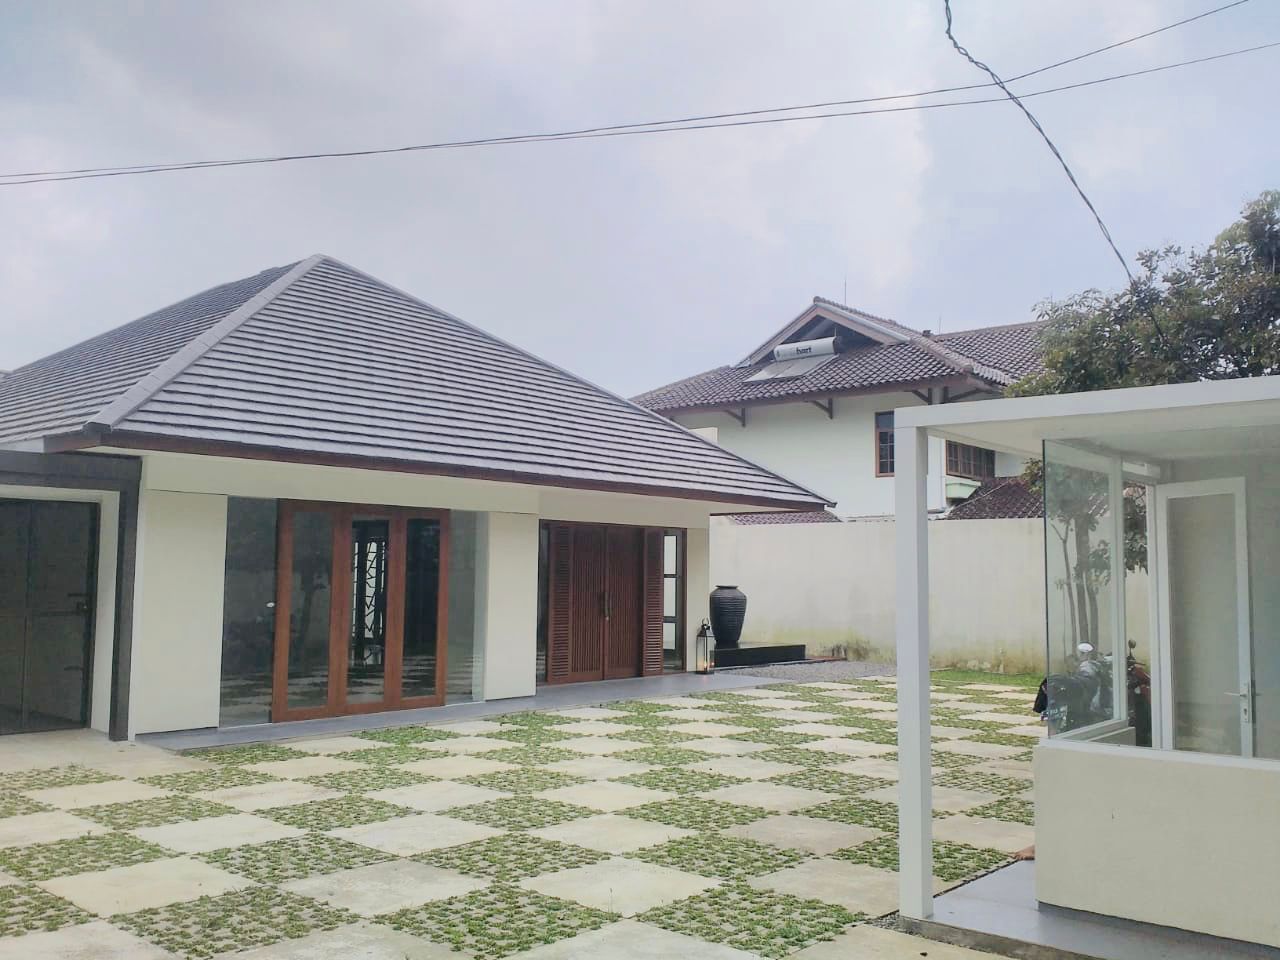 Jual : Rumah Mainroad Sayap Riau Martadinata Kondisi Bangunan Bagus sekali halaman luas dengan halaman belakang